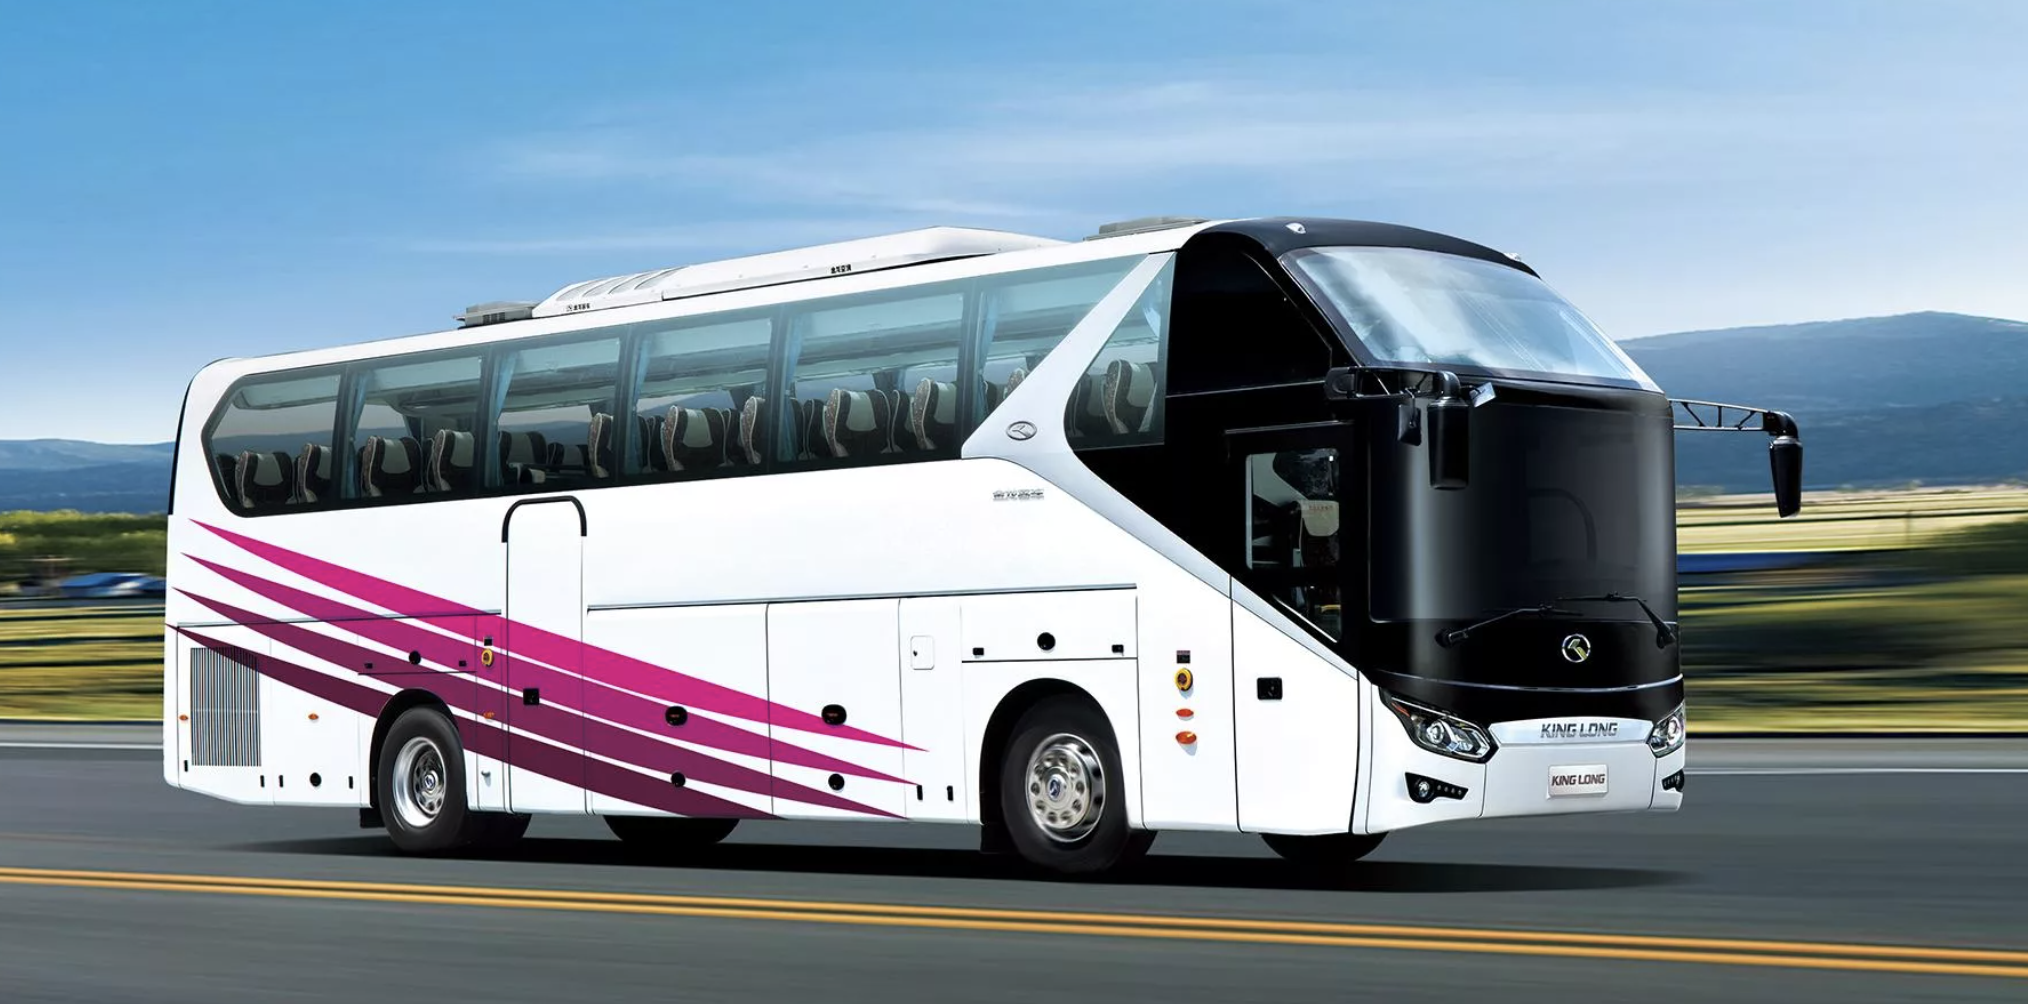 Автобусы Кинг Лонг пассажирские. Туристический автобус Кинг Лонг. Кинг Лонг автобус 2021 года. Туристические автобусы Кинг Лонг 45 мест. Перевозка пассажиров межгород